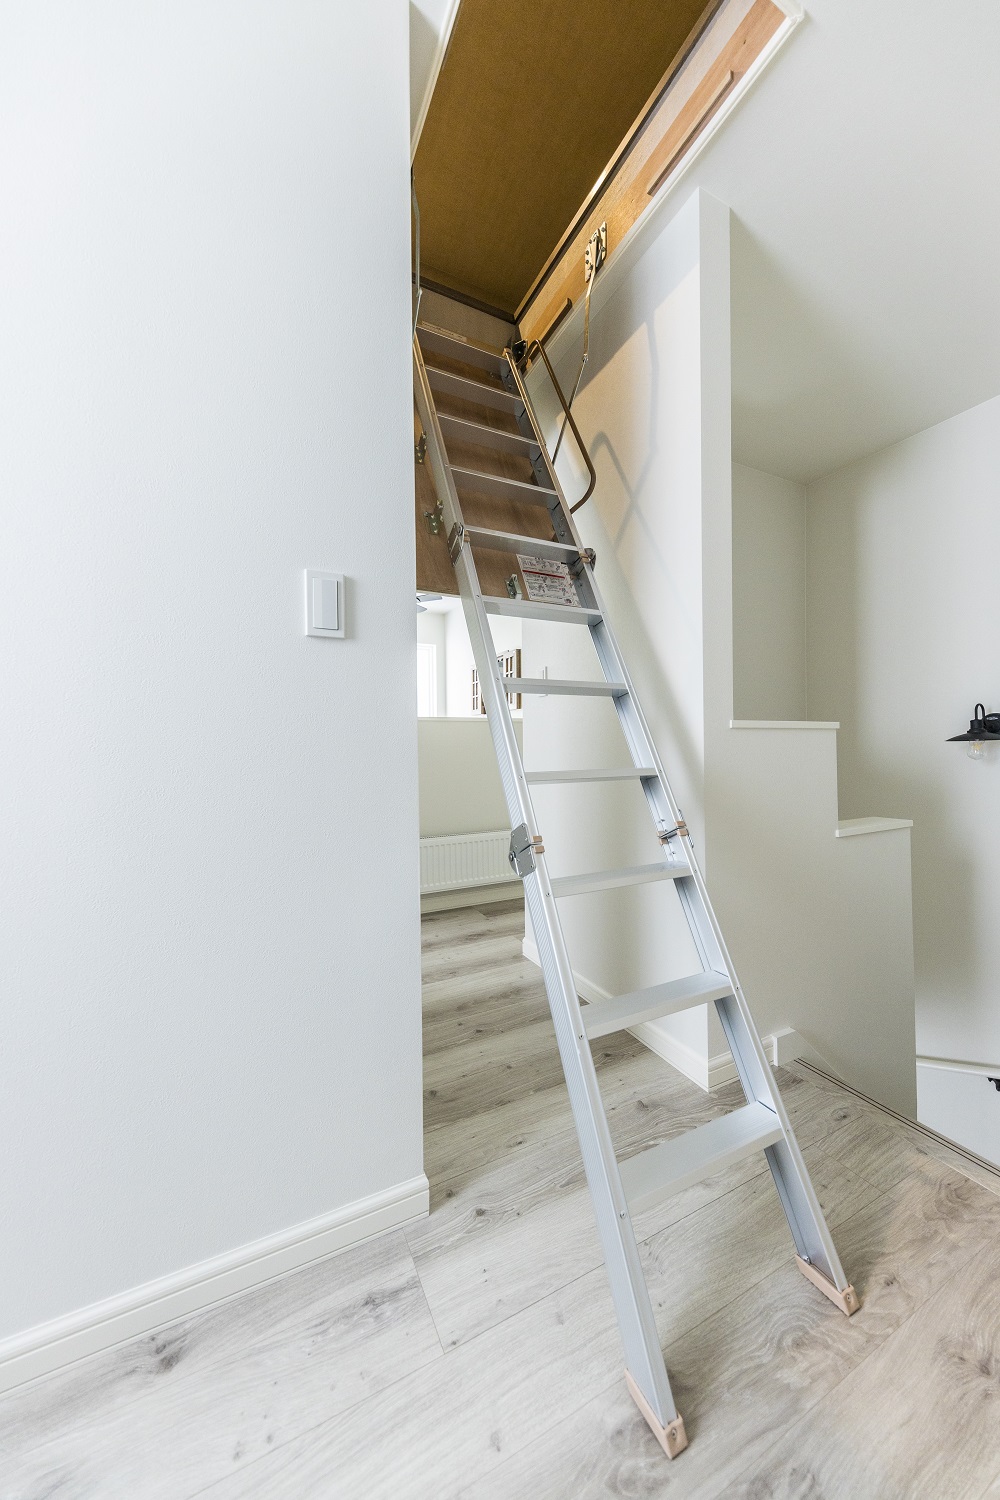 小屋裏収納へとつながる階段。使わないときは畳んで天井に収納。通常の階段にすることも可能です。